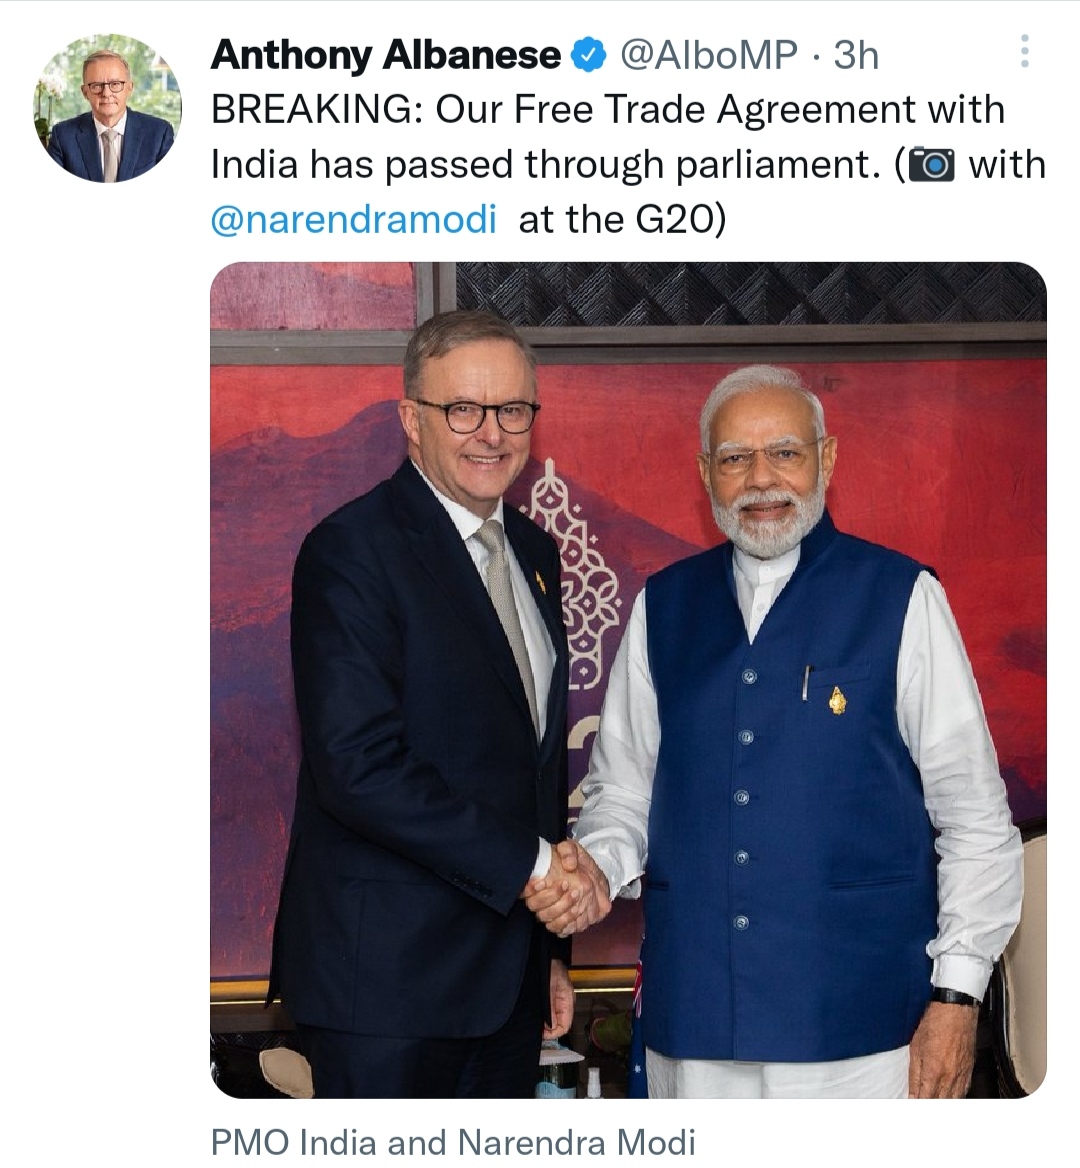 भारत के साथ FTA संसद से पारित: ऑस्ट्रेलियाई PM ने ट्वीट कर दी जानकारी